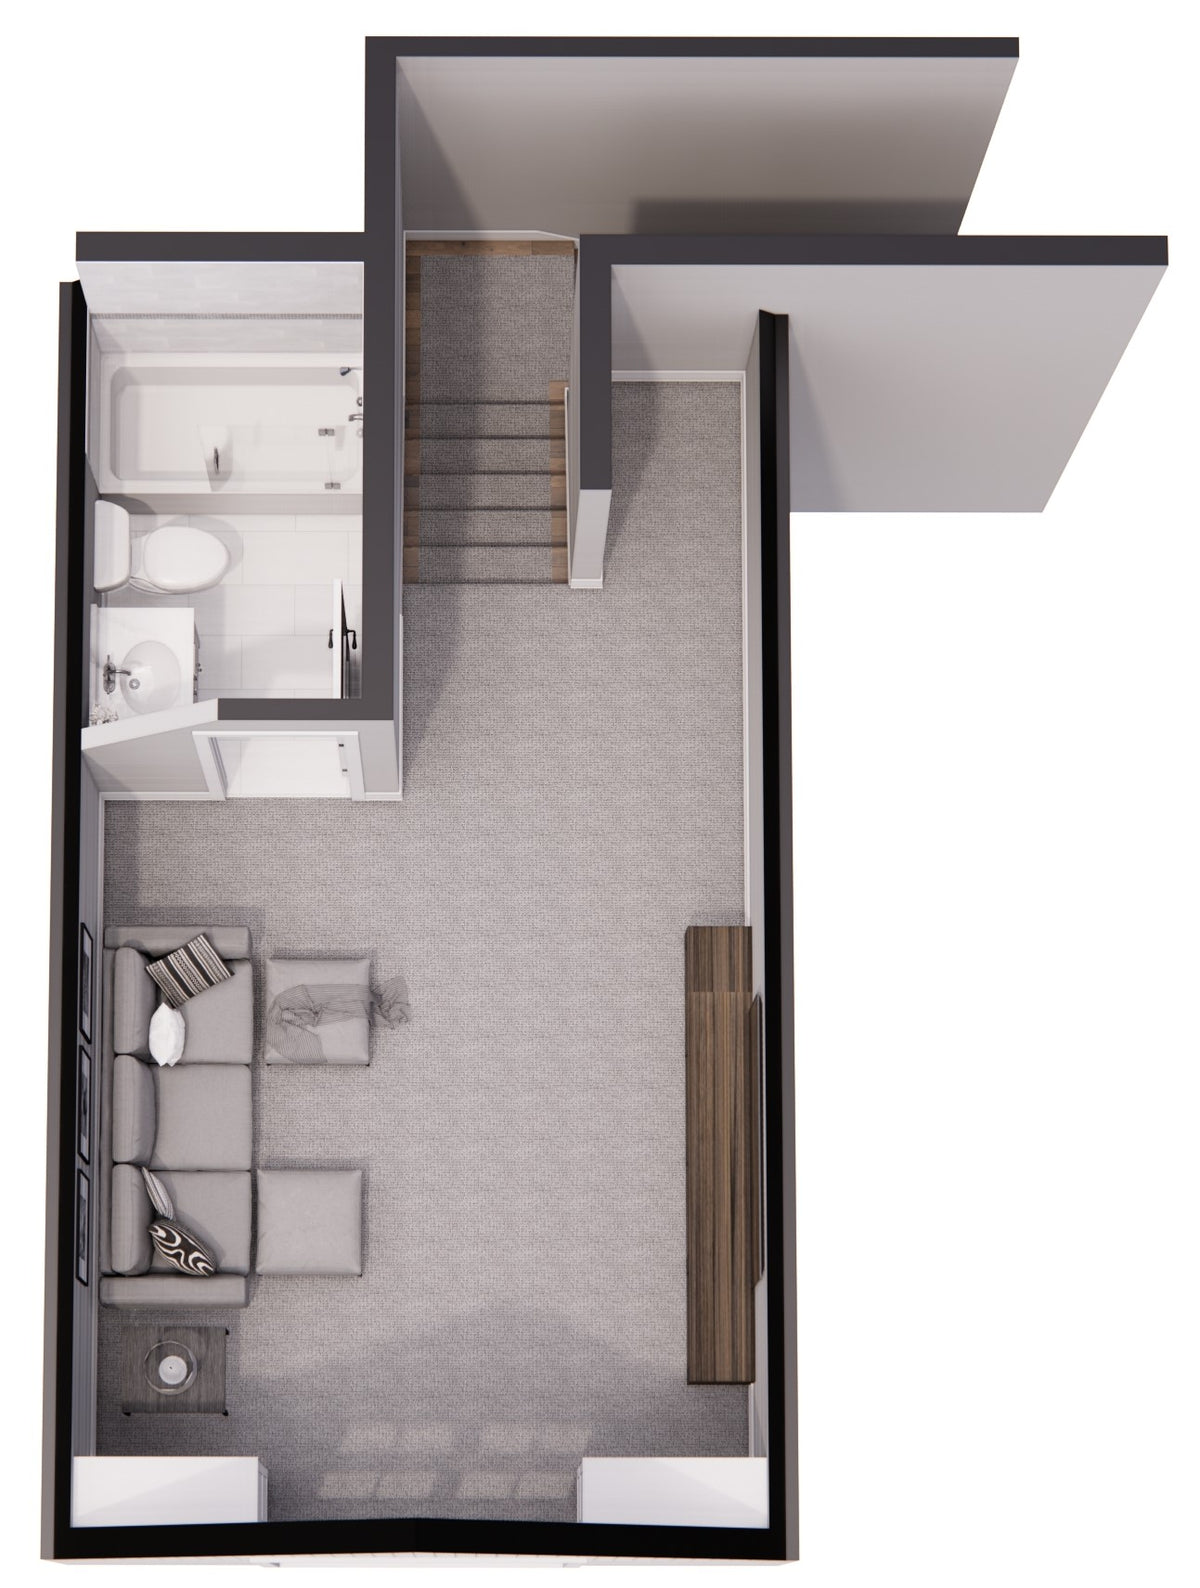 Winfield House Plan - Top View -3D